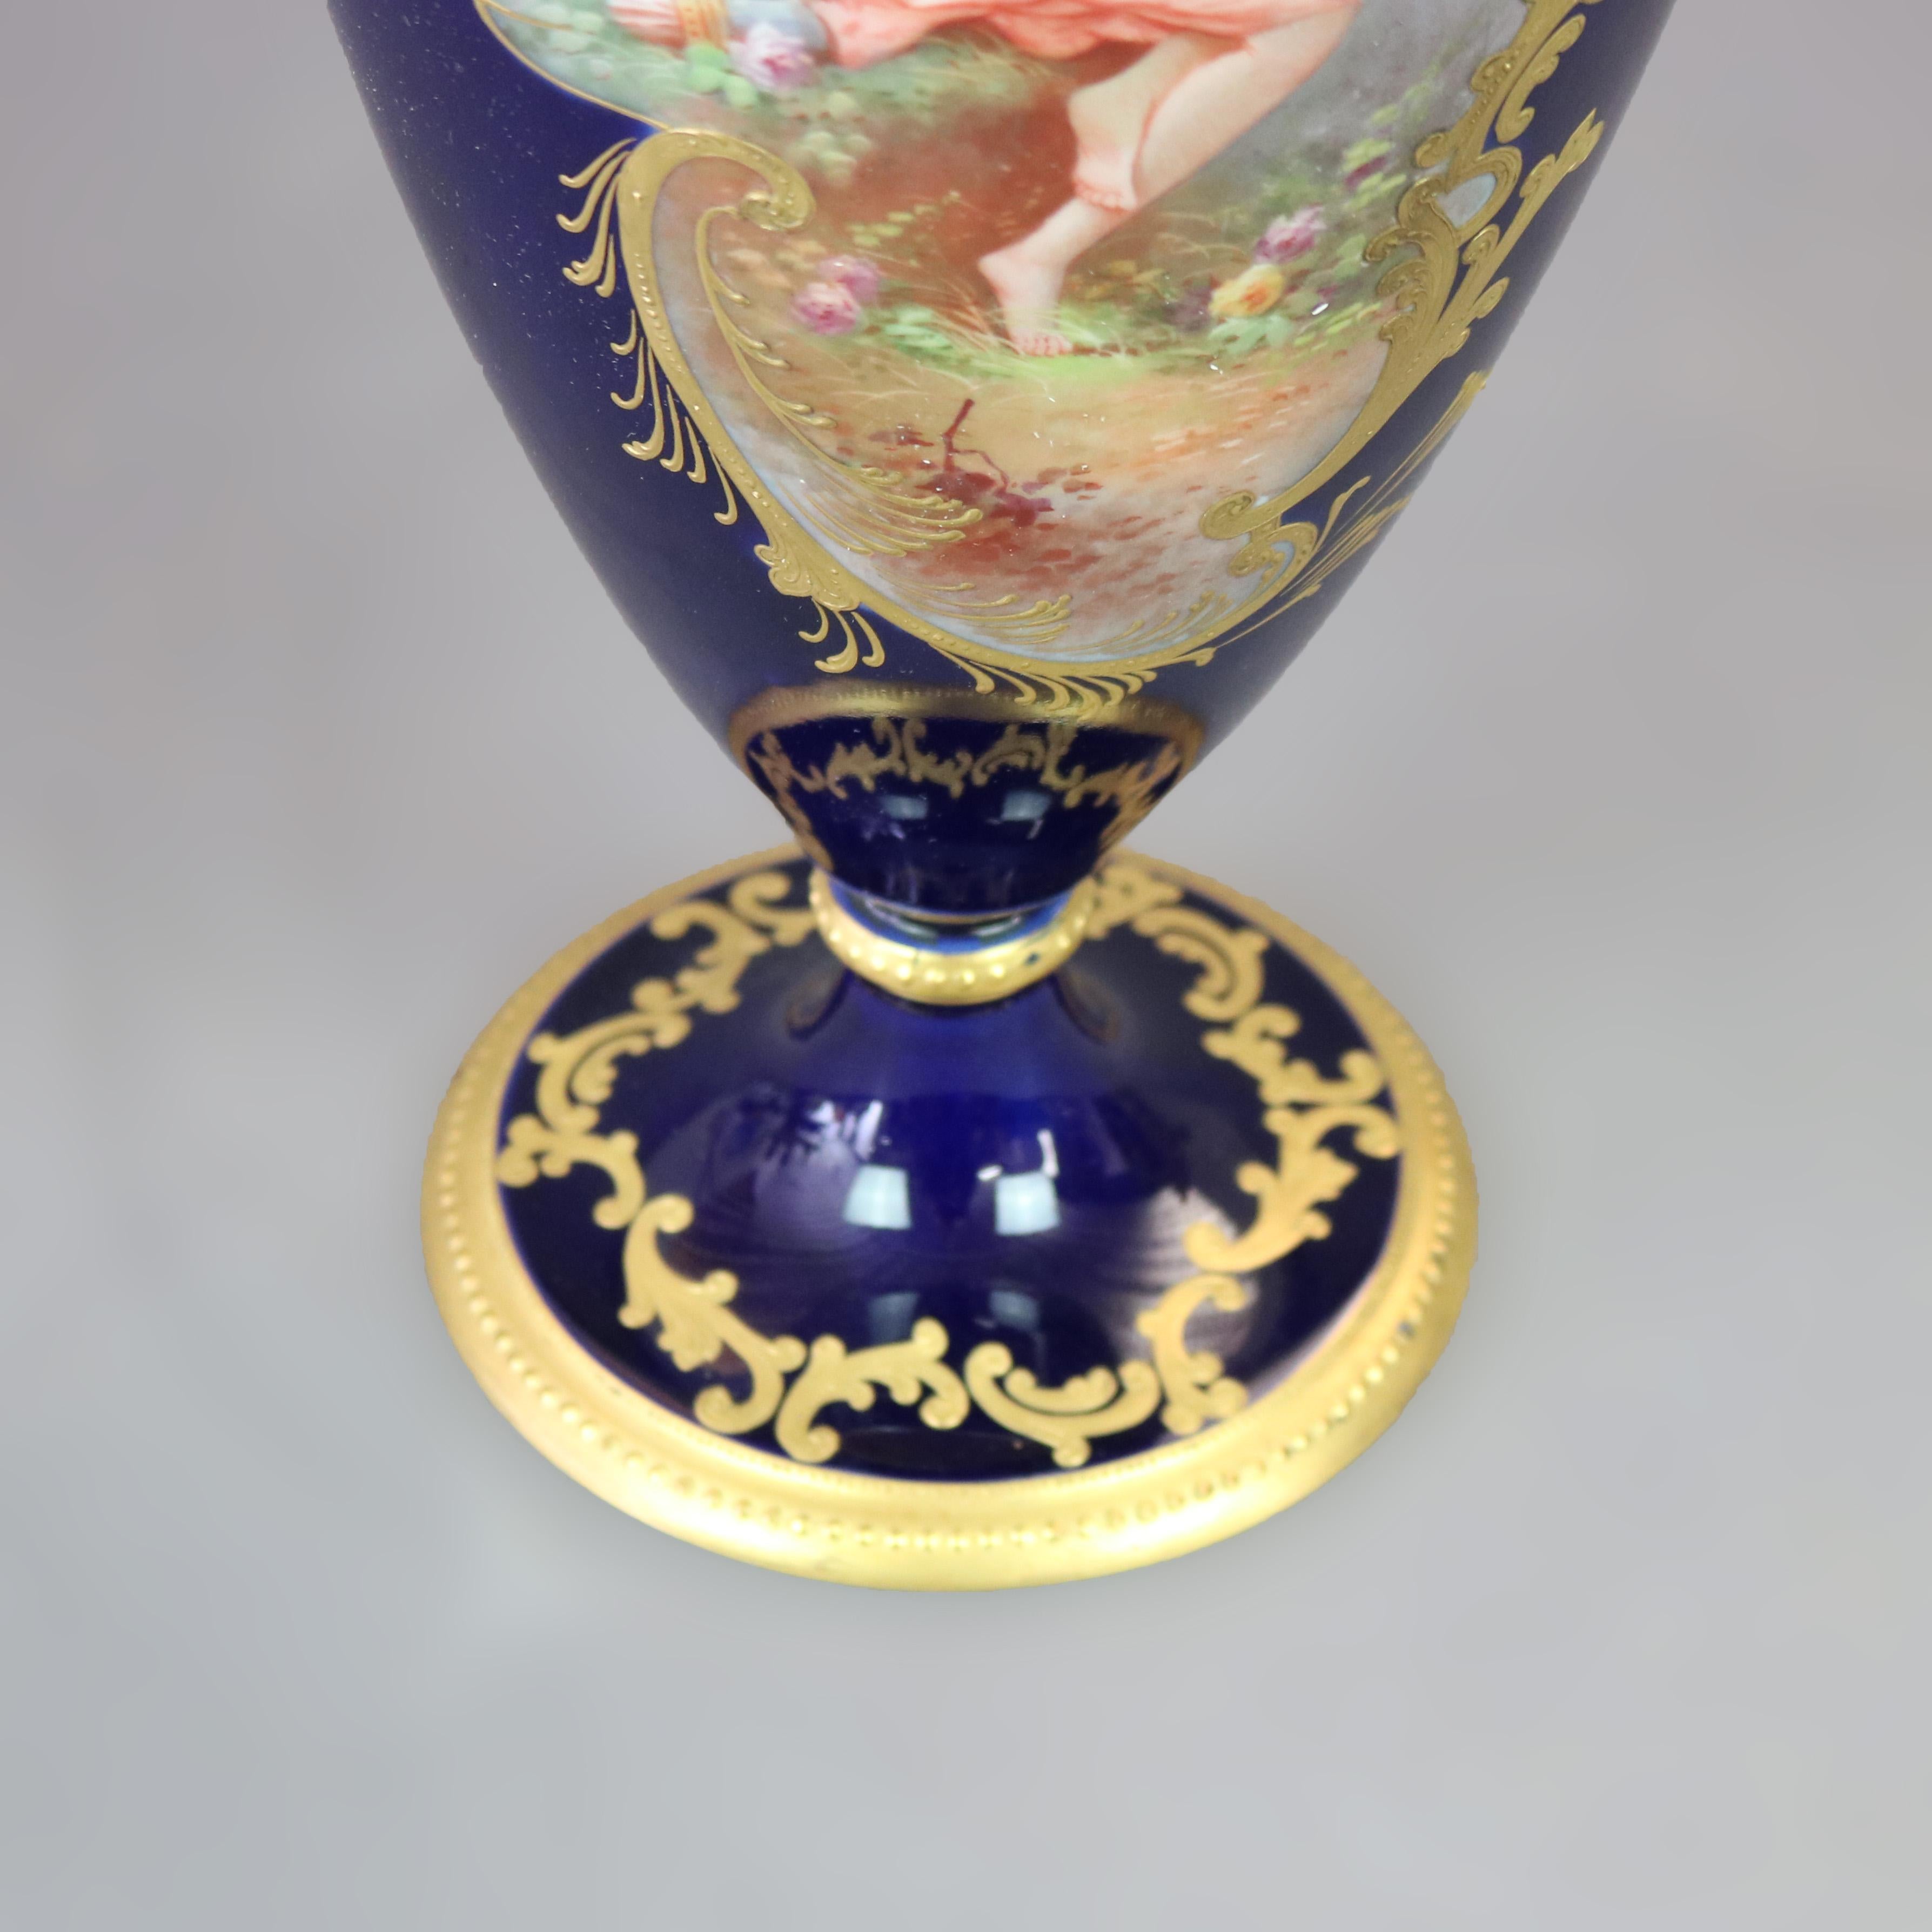 Oversized Antique Limoges Porcelain Hand Painted Allegorical Portrait Urn c1900 For Sale 9